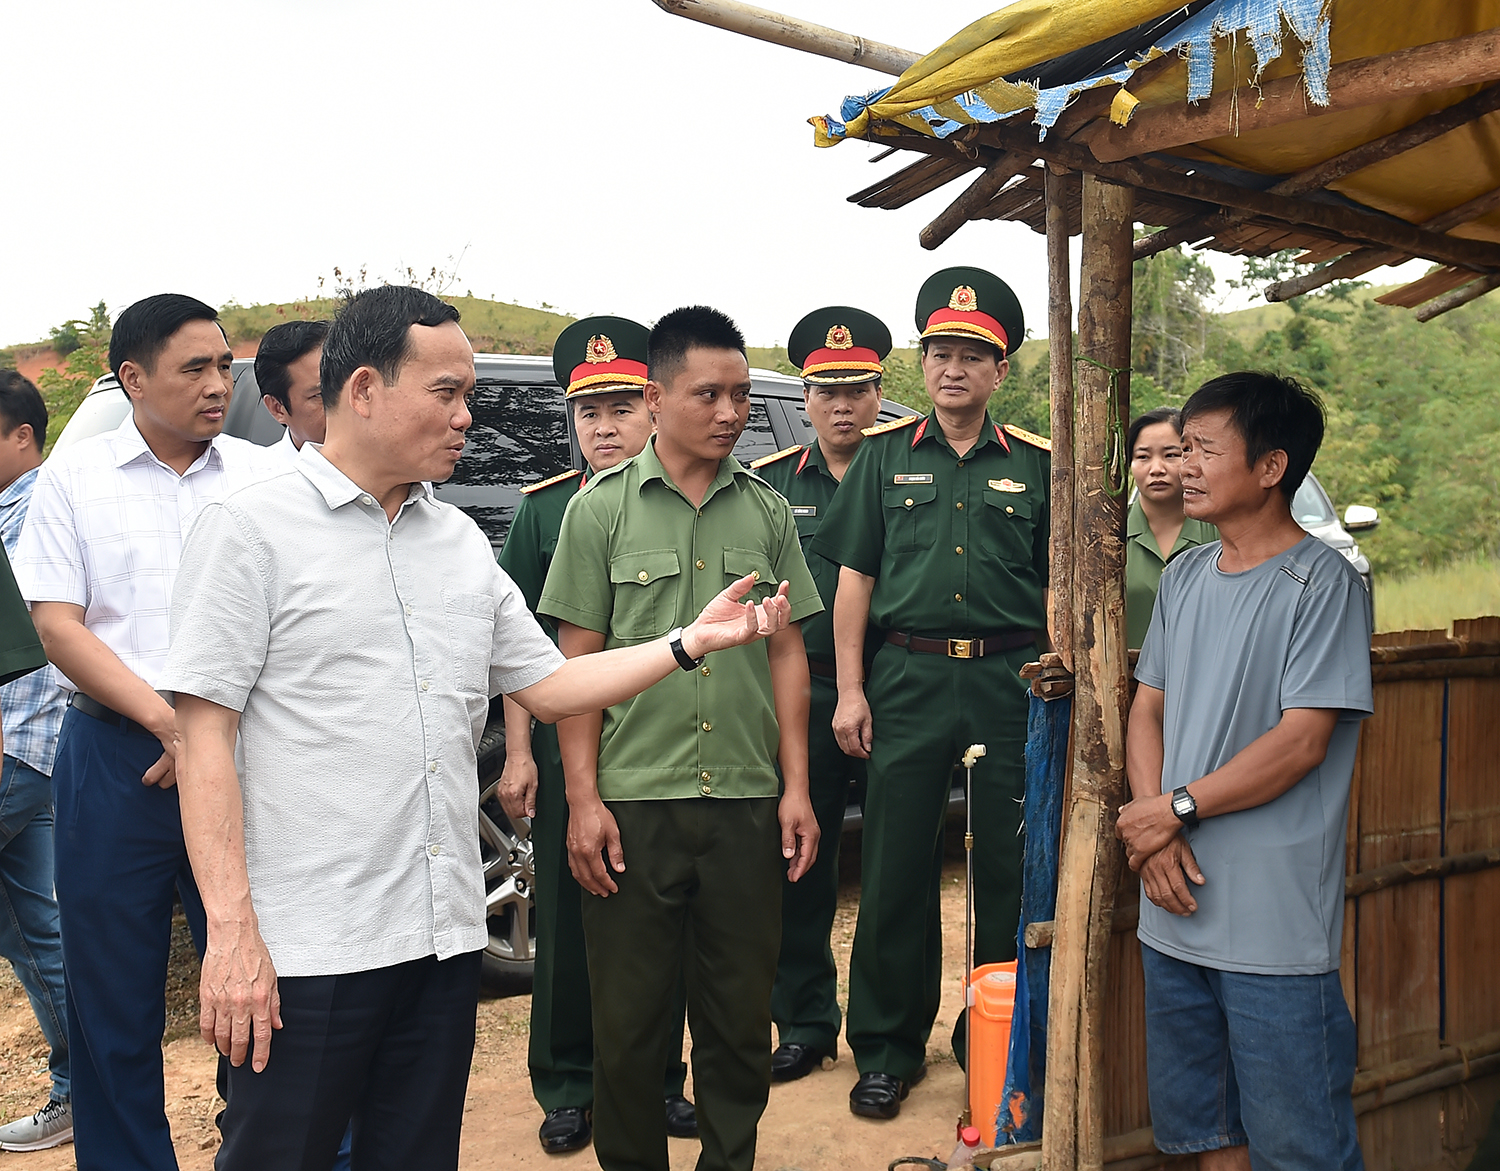 Phó Thủ tướng thăm hỏi, trò chuyện với người dân được khoán bảo vệ rừng - Ảnh: VGP/Hải Minh